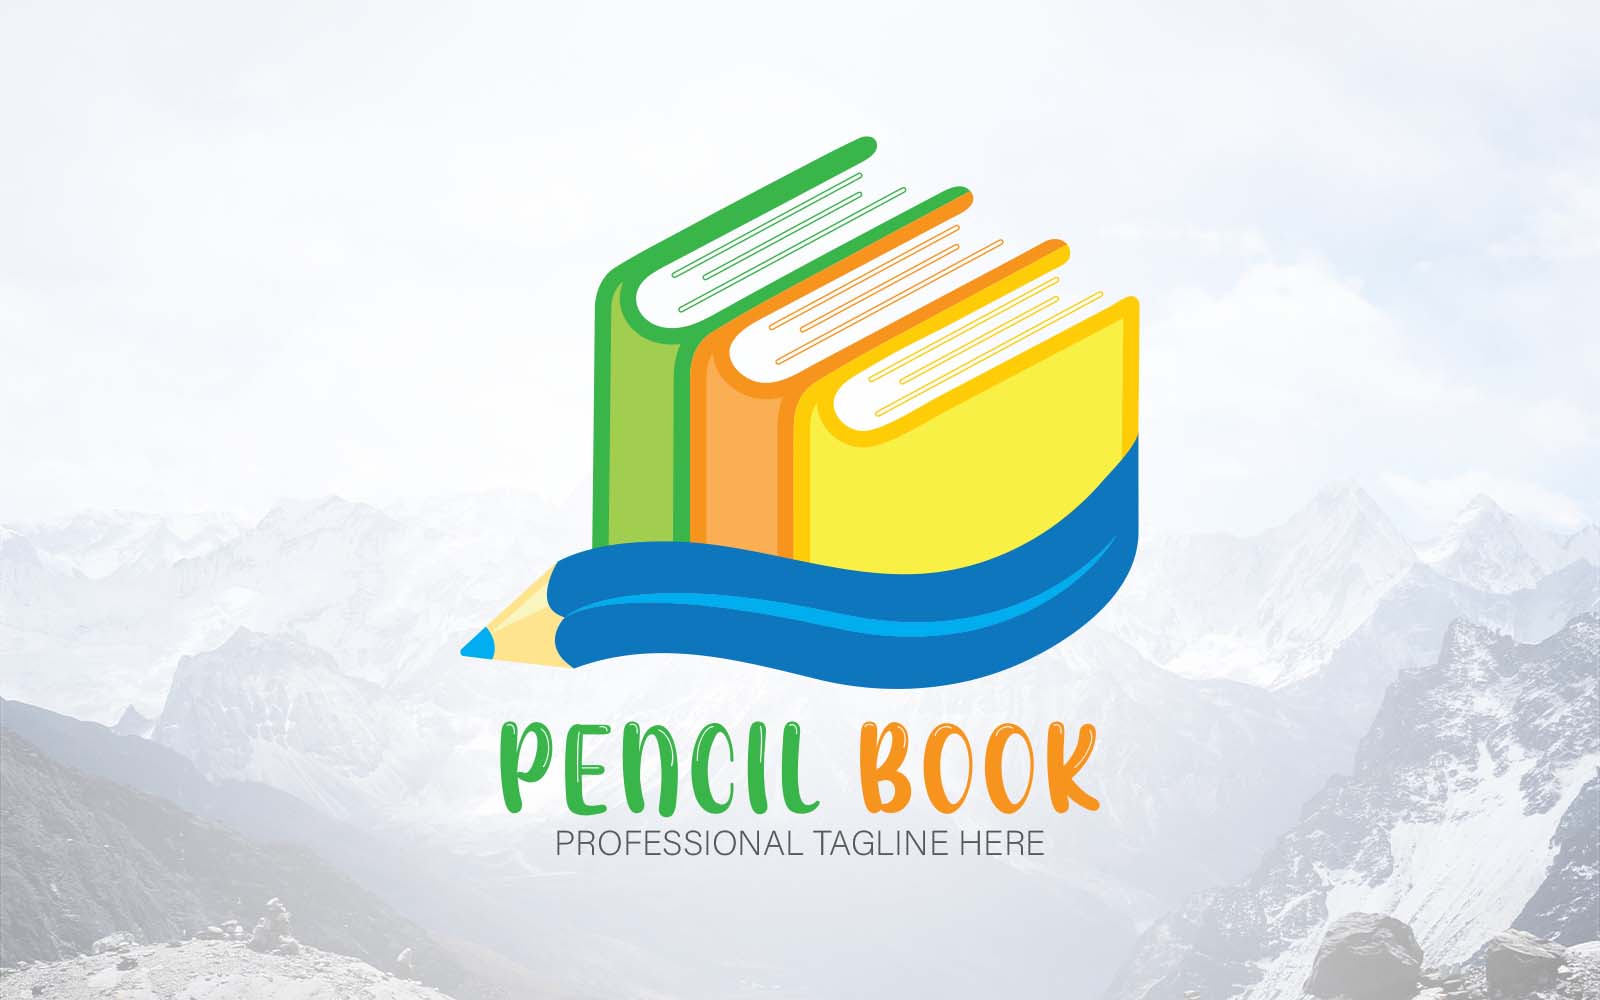 Hexagon Pencil Book Education Architecture Logo-Brand Identity